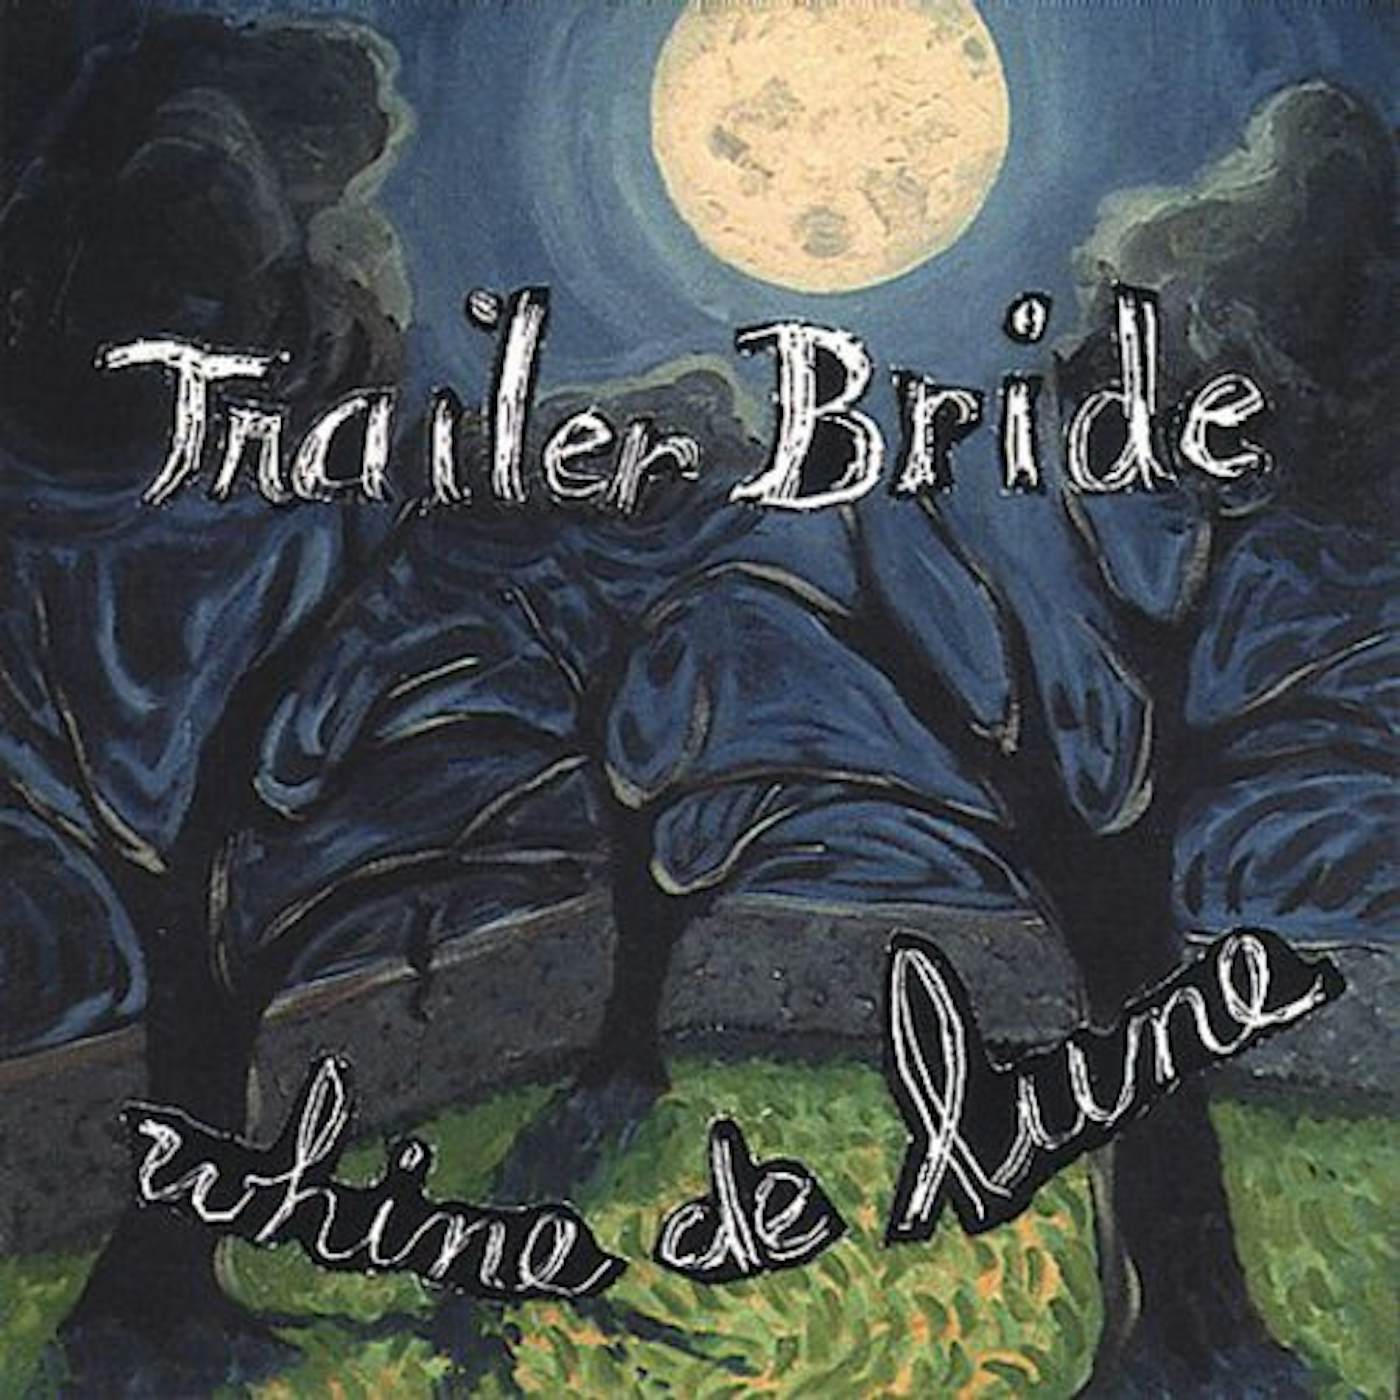 Trailer Bride WHINE DE LUNE CD